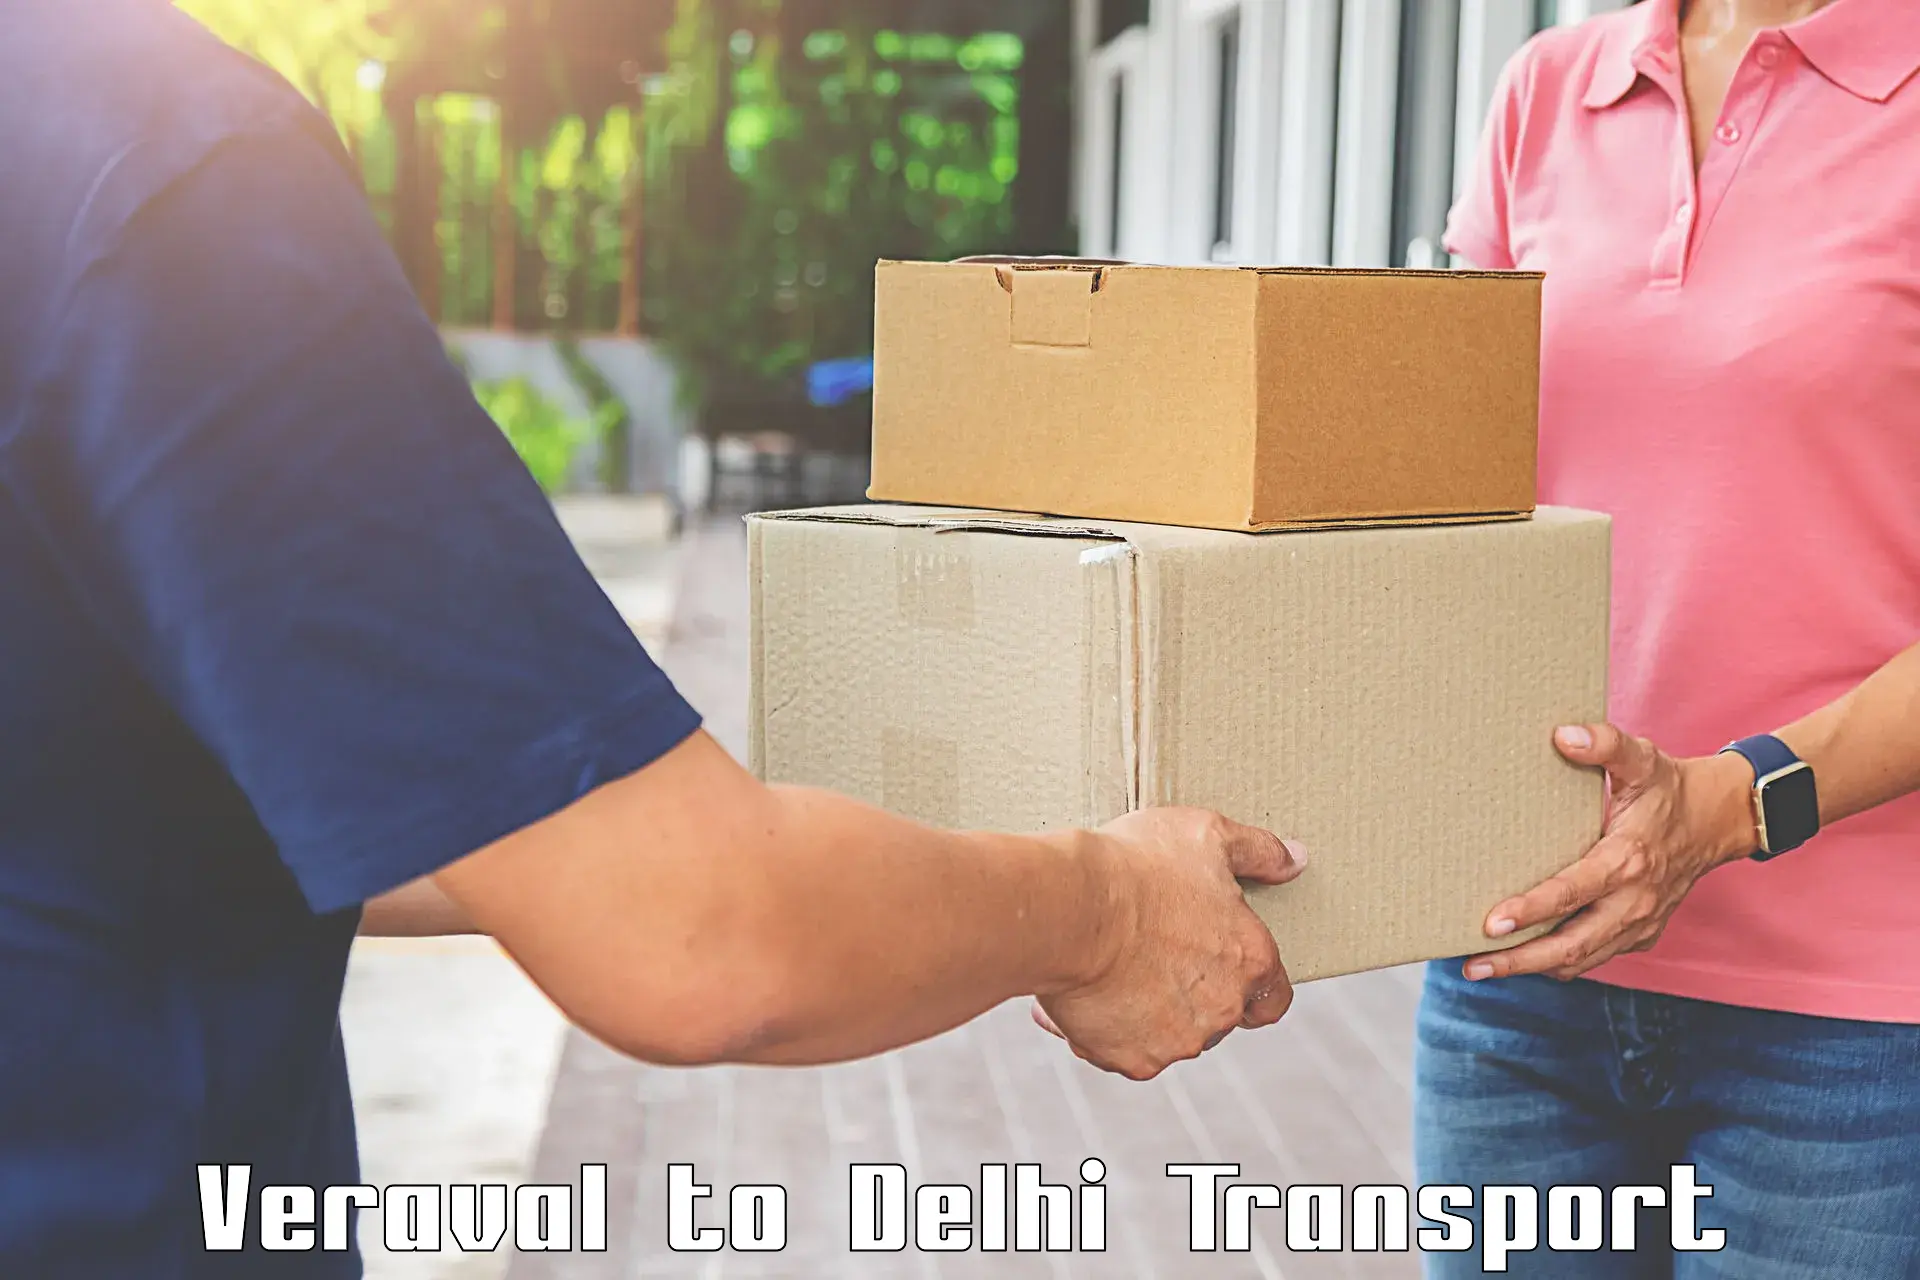 Domestic transport services Veraval to Jamia Millia Islamia New Delhi